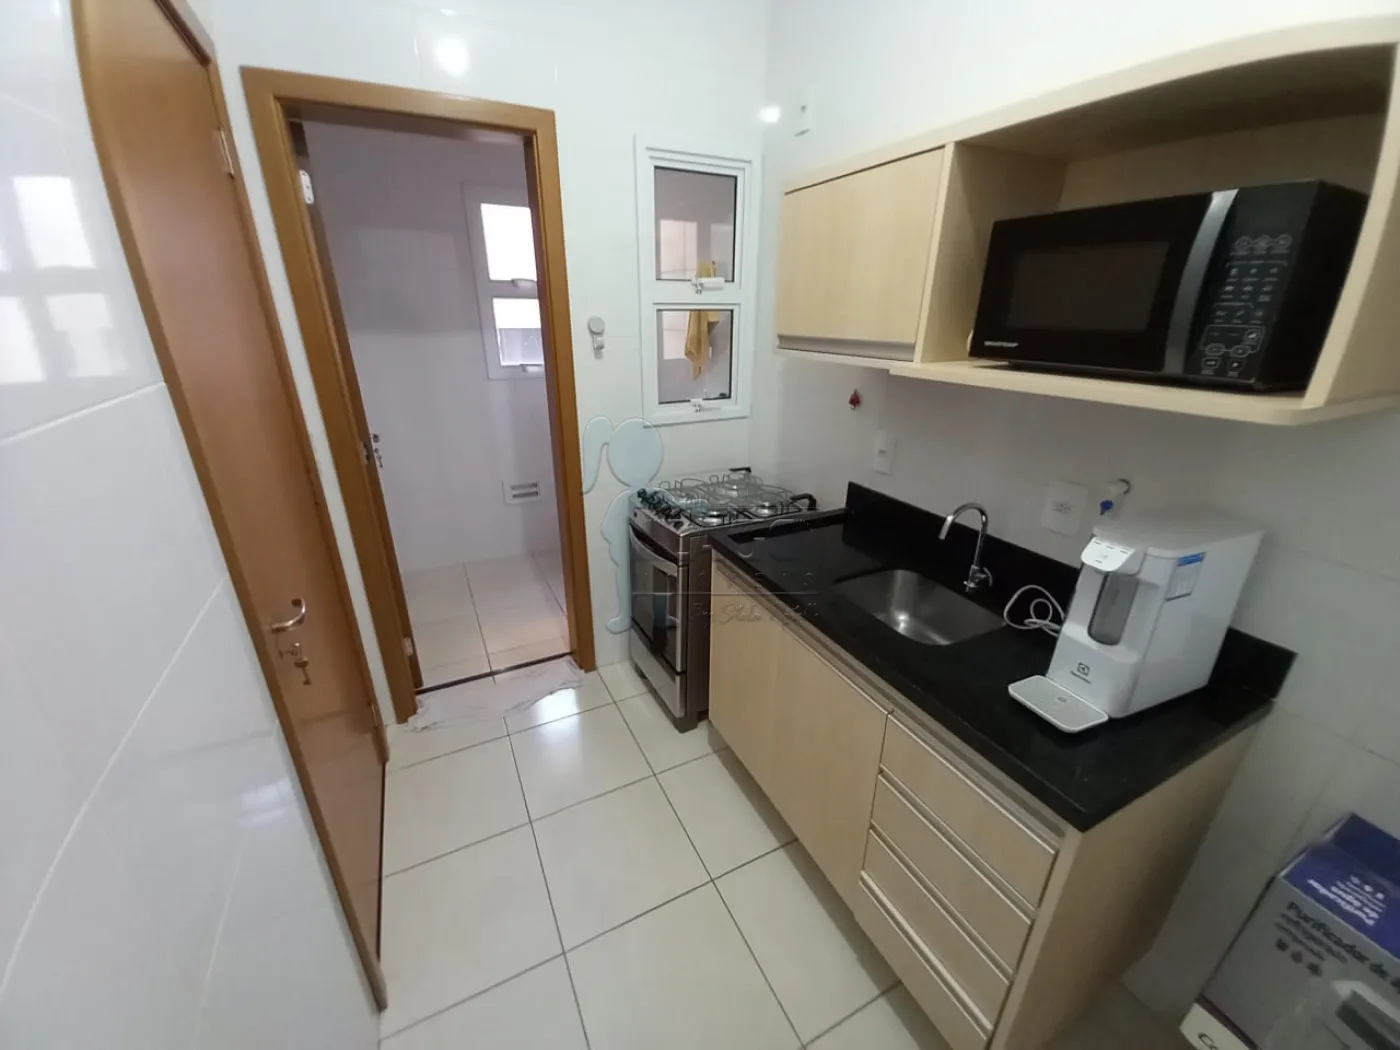 Alugar Apartamentos / Padrão em Ribeirão Preto R$ 2.900,00 - Foto 14